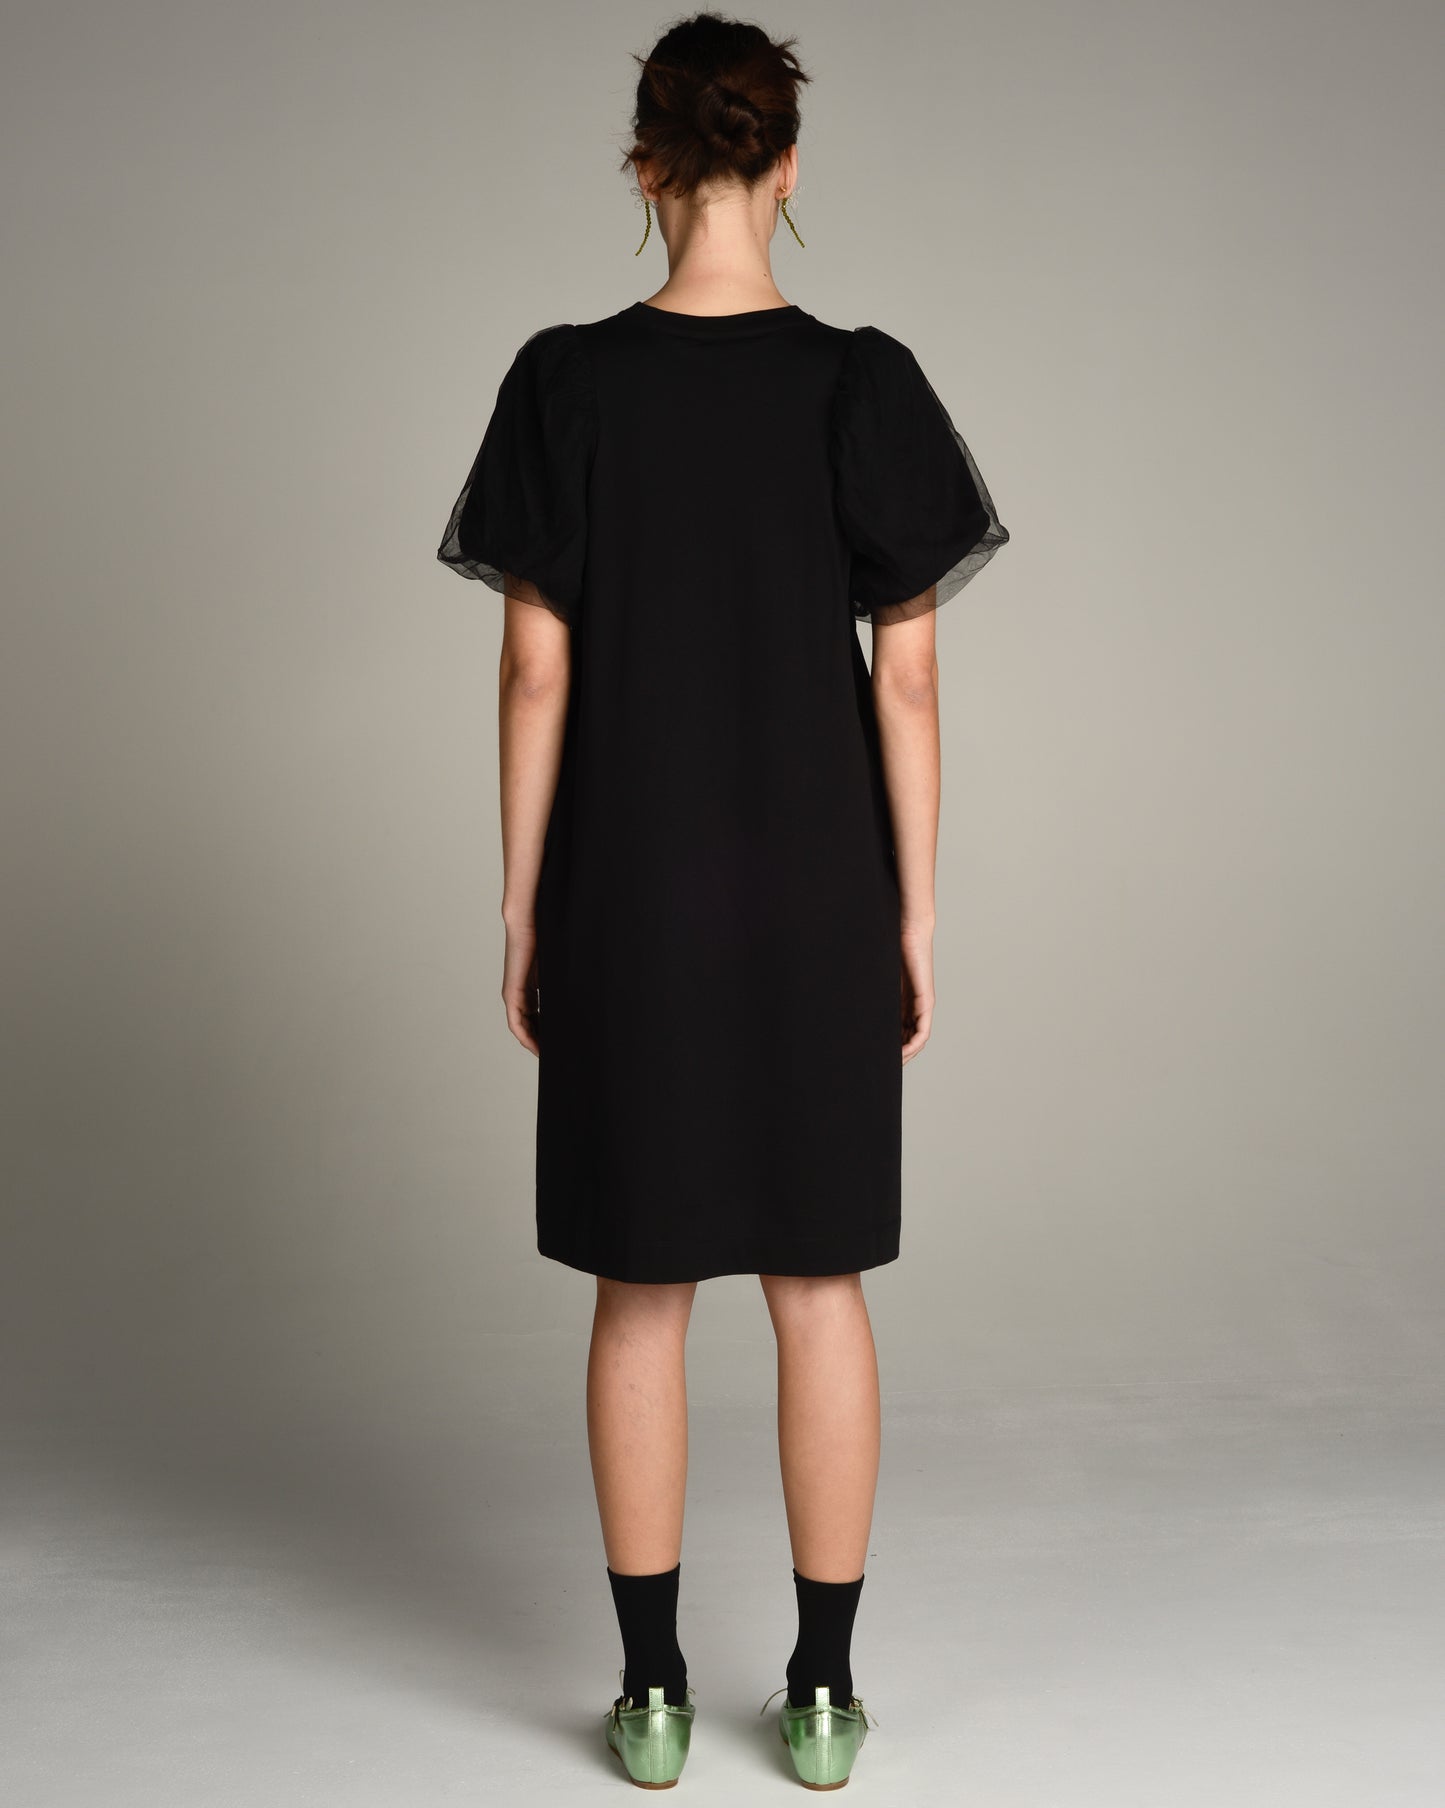 Black Tulle Sleeve Dress